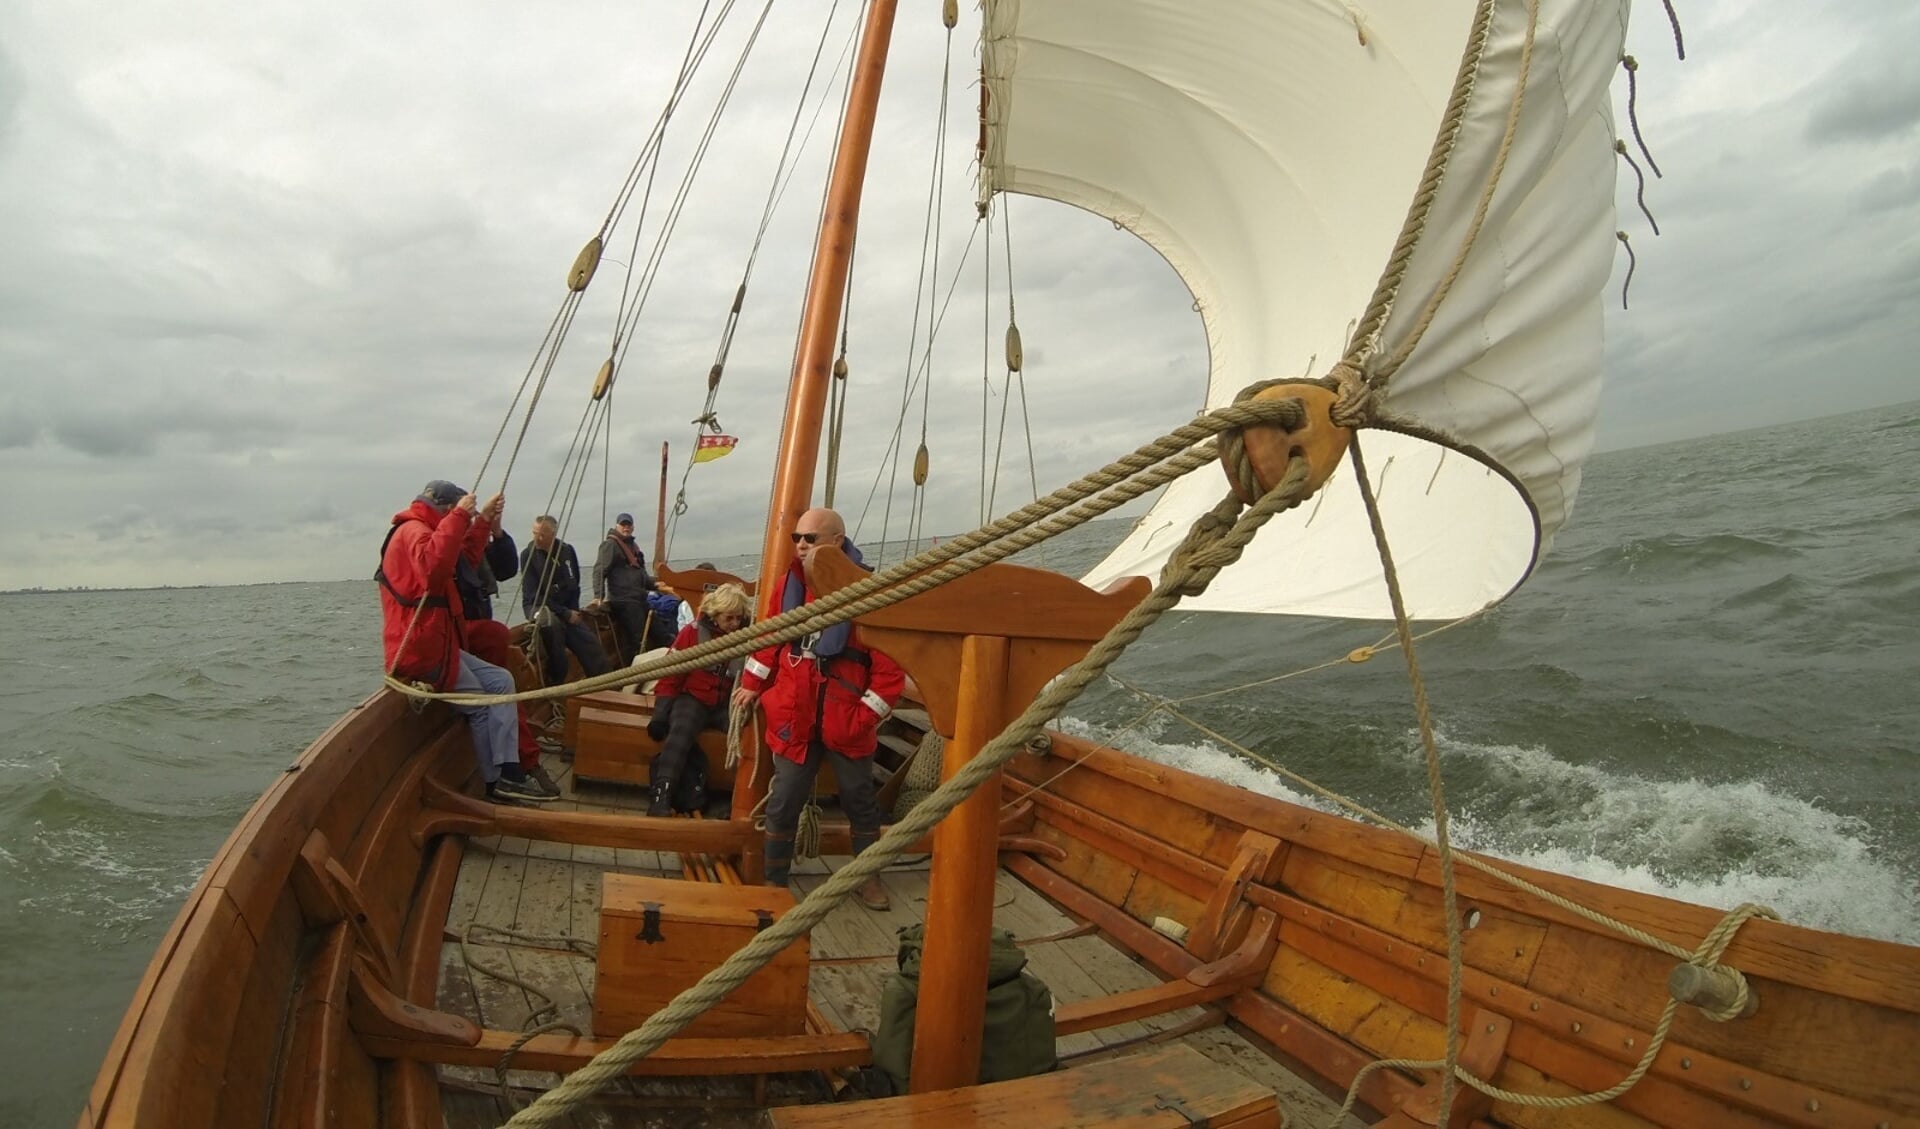 Met Vikingschip Dorestat-1 naar Muiden